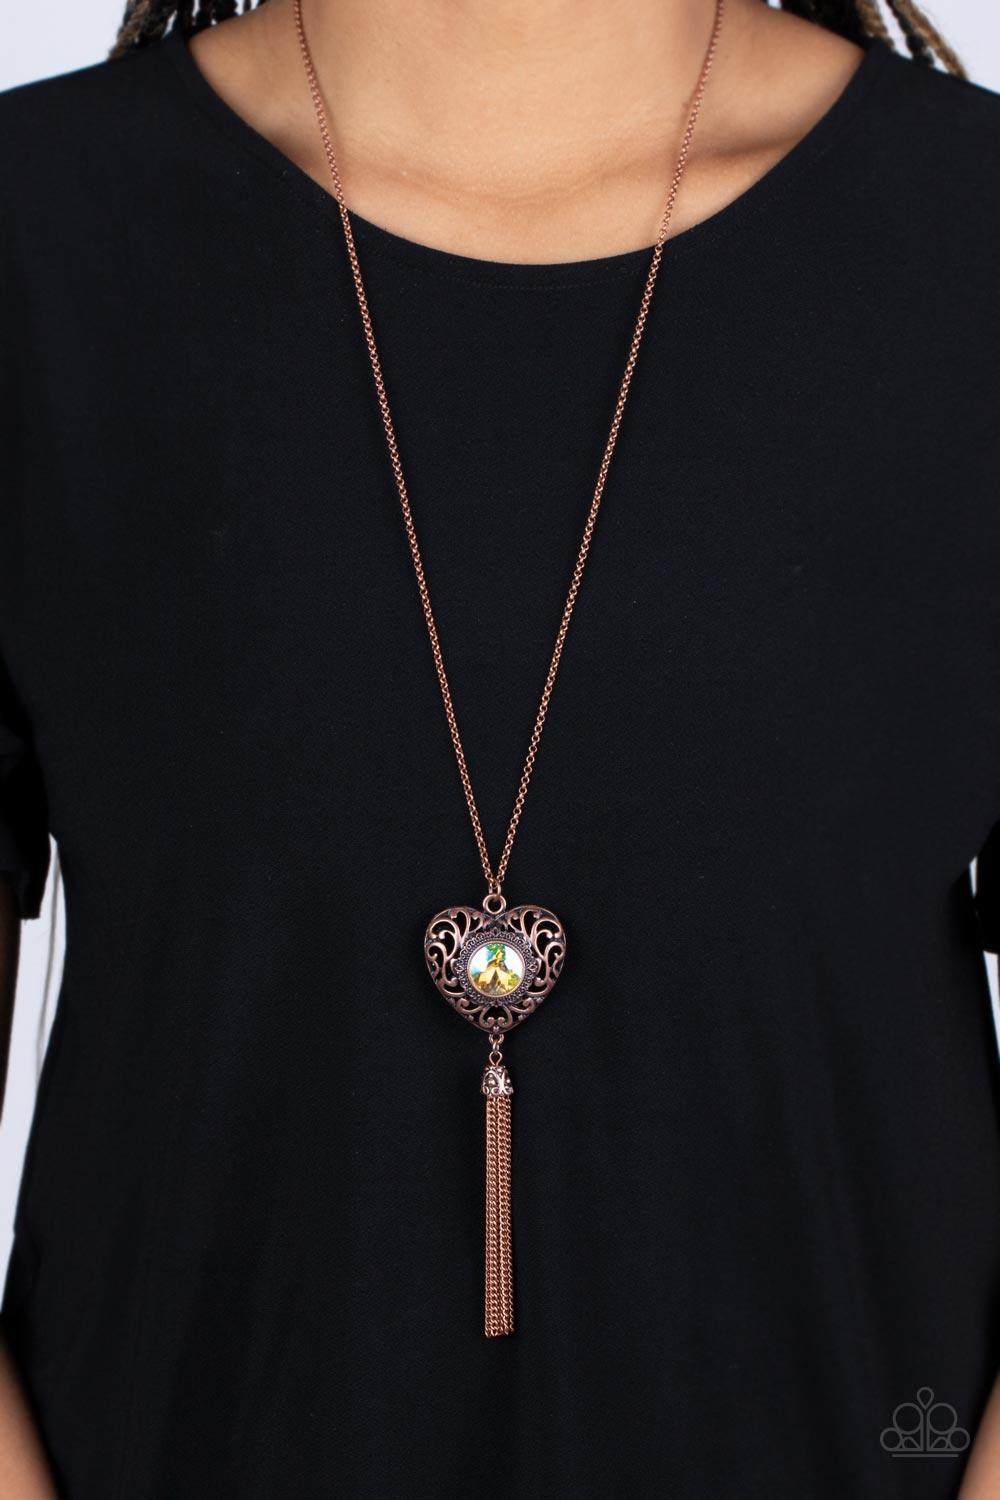 Prismatic Passion Copper Necklace - Jewelry by Bretta